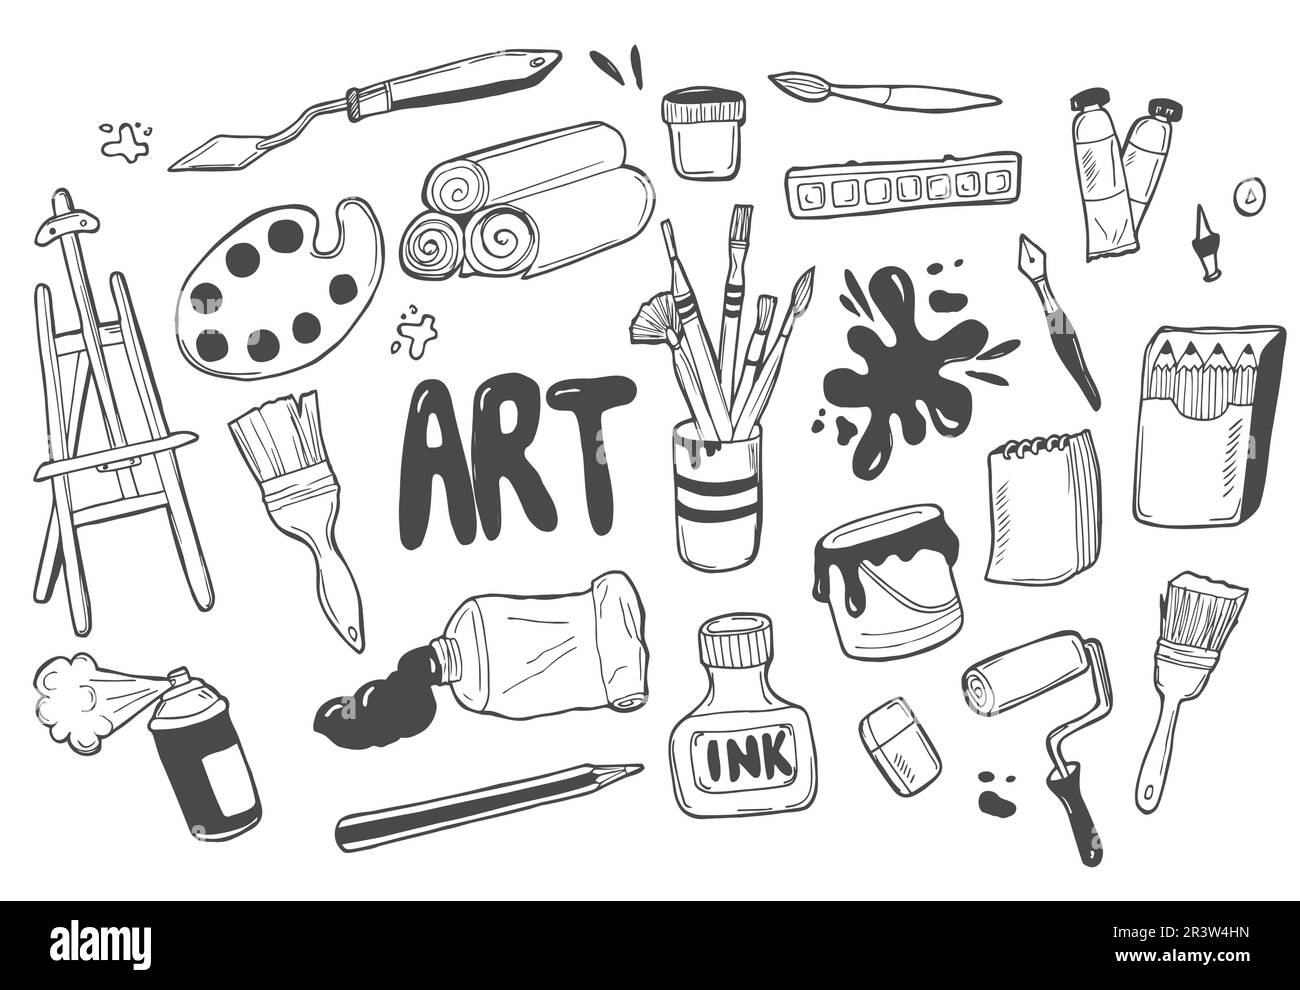 Zeichenwerkzeuge skizzieren von Hand gezeichnetes Set-Vektor-Design in Weiß und Schwarz. Kunsthintergrund. Stock Vektor